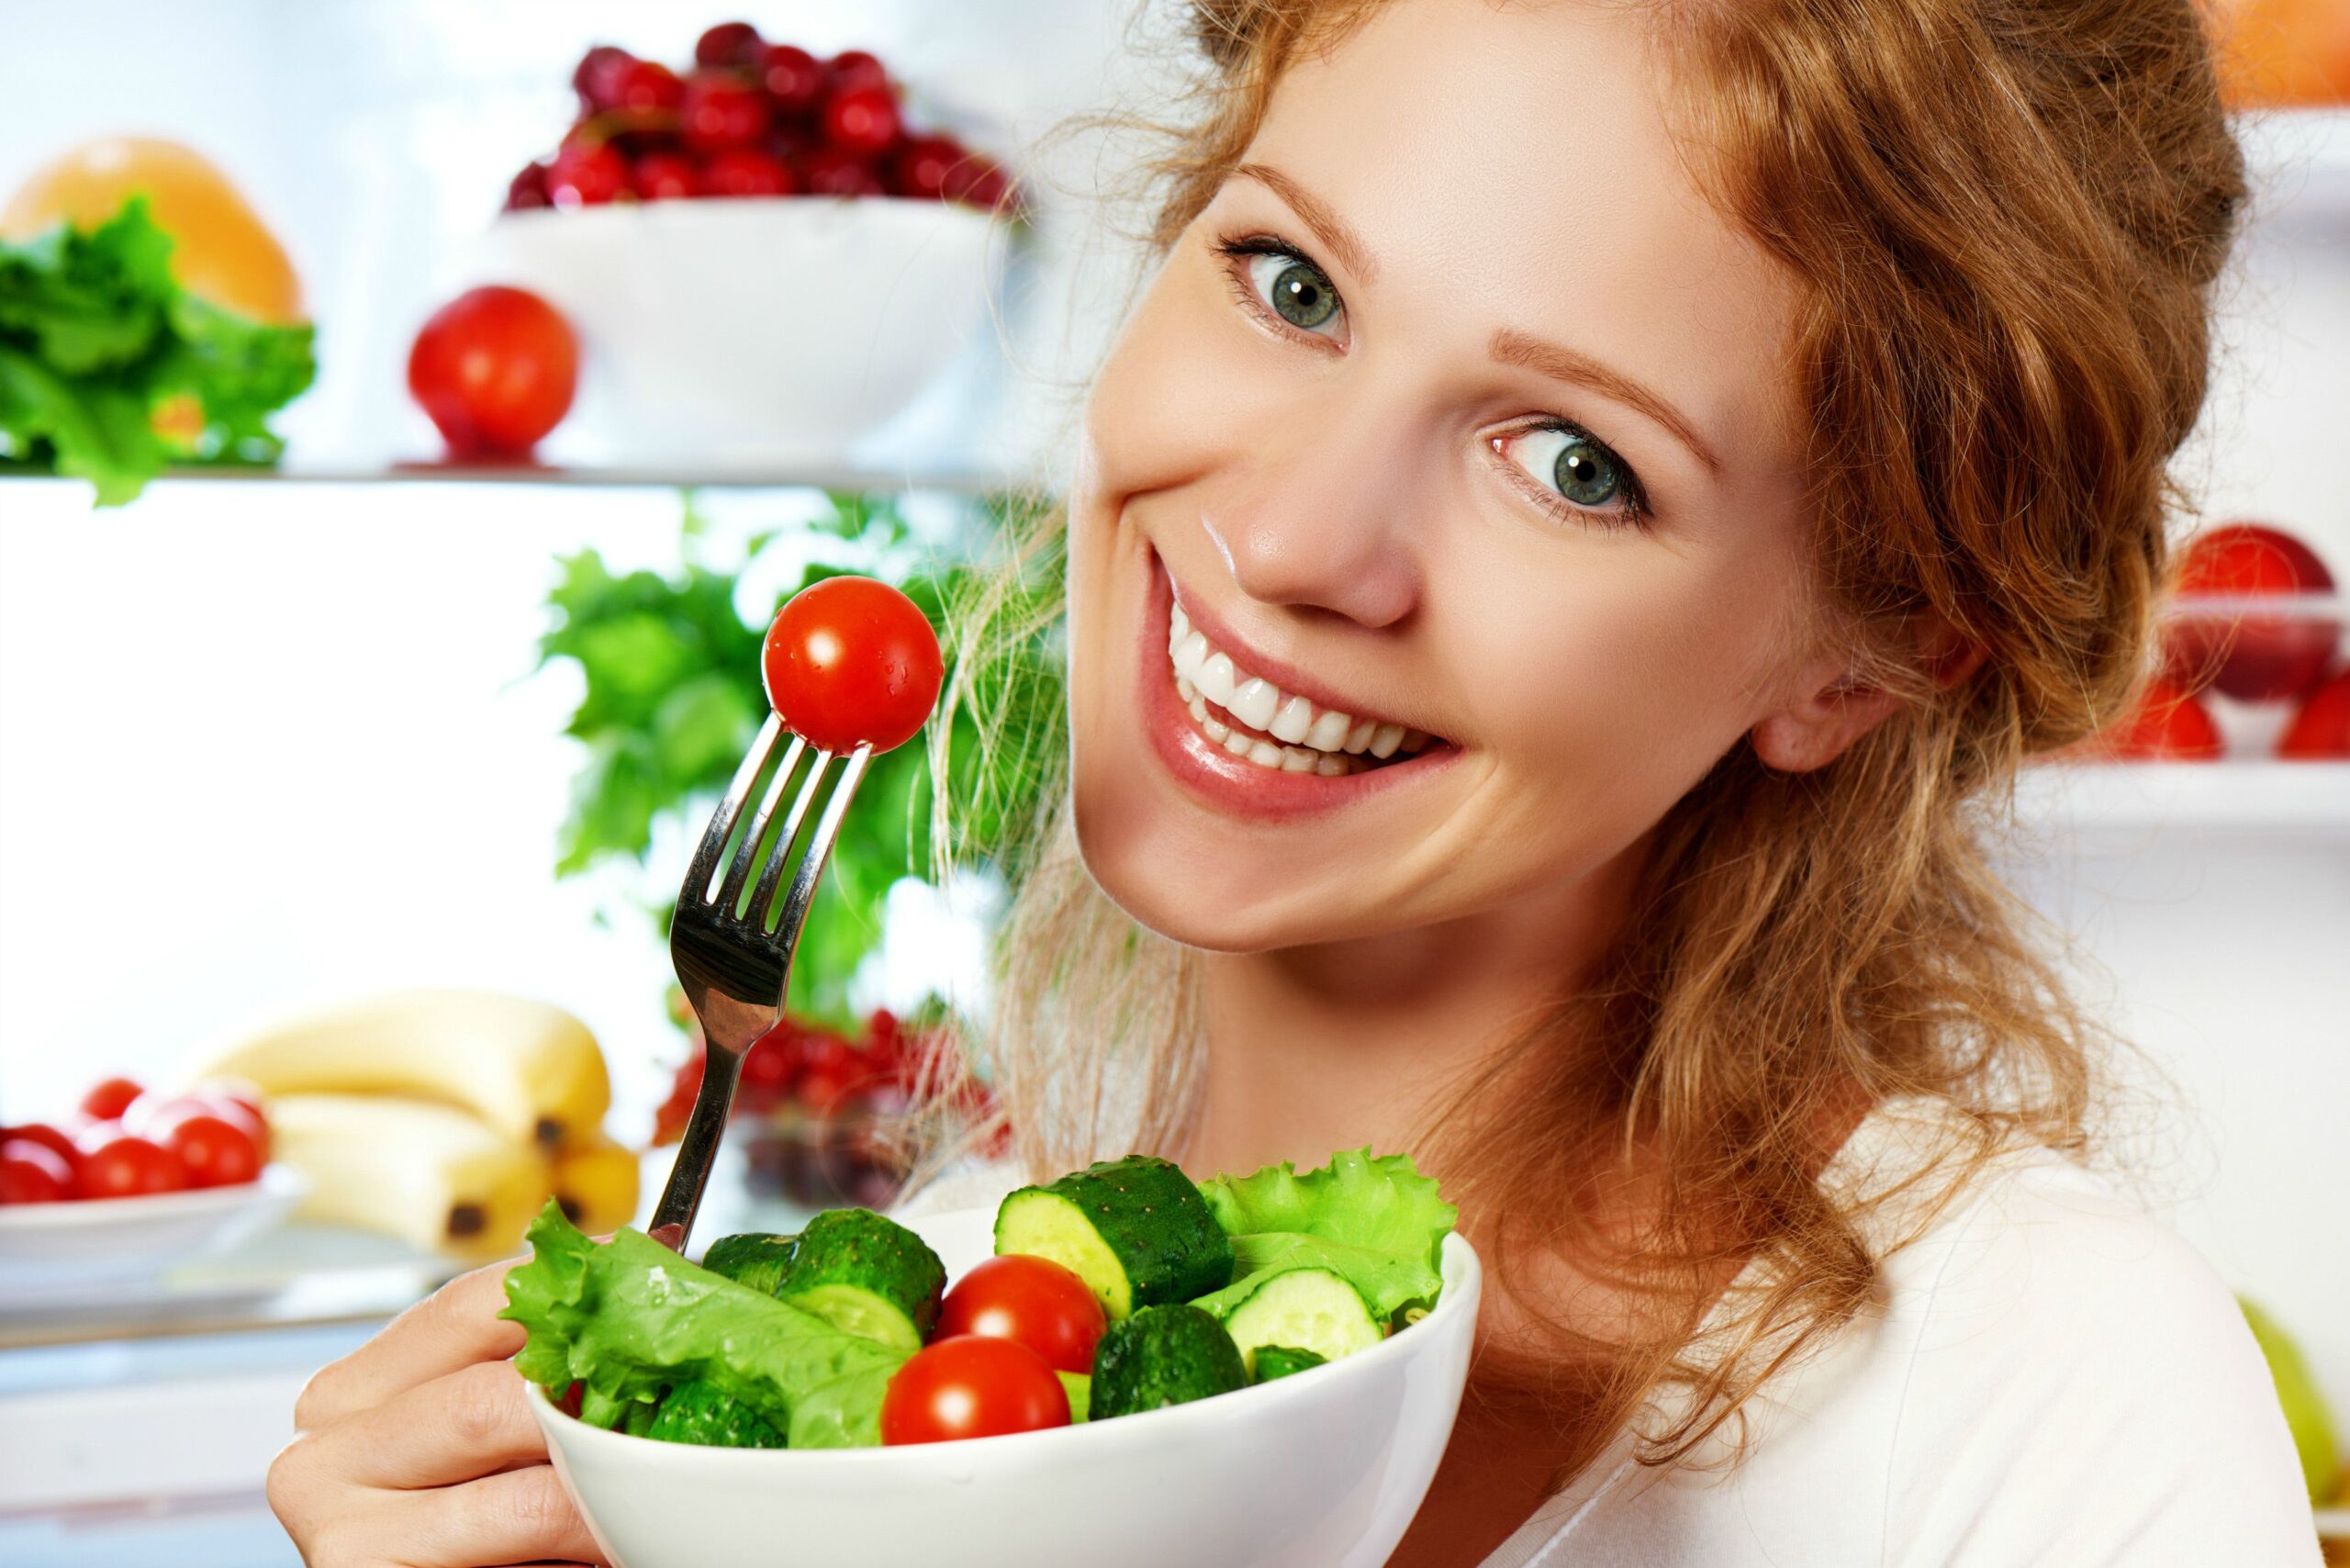 أساسيات التغذية من أجل صحة المرأة النباتية